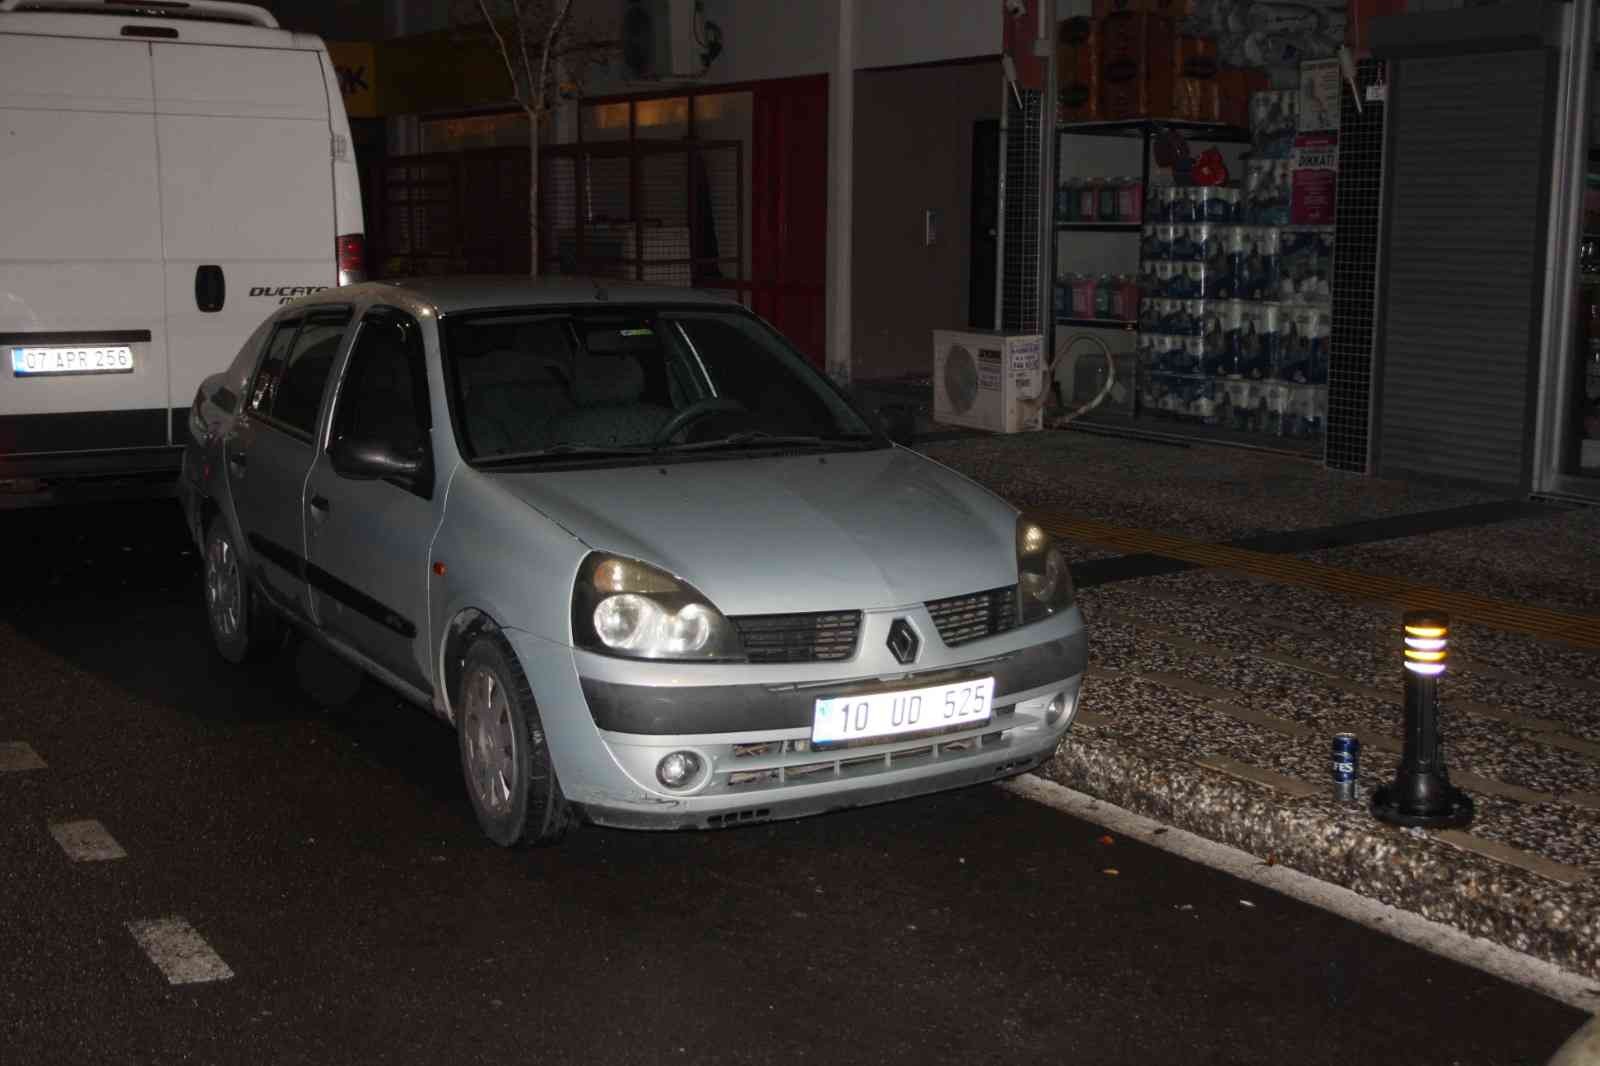 Vatandaşların yolunu kesip polise ihbar ettiği alkollü sürücü, savcı olduğunu iddia edip hakaret yağdırdı #antalya